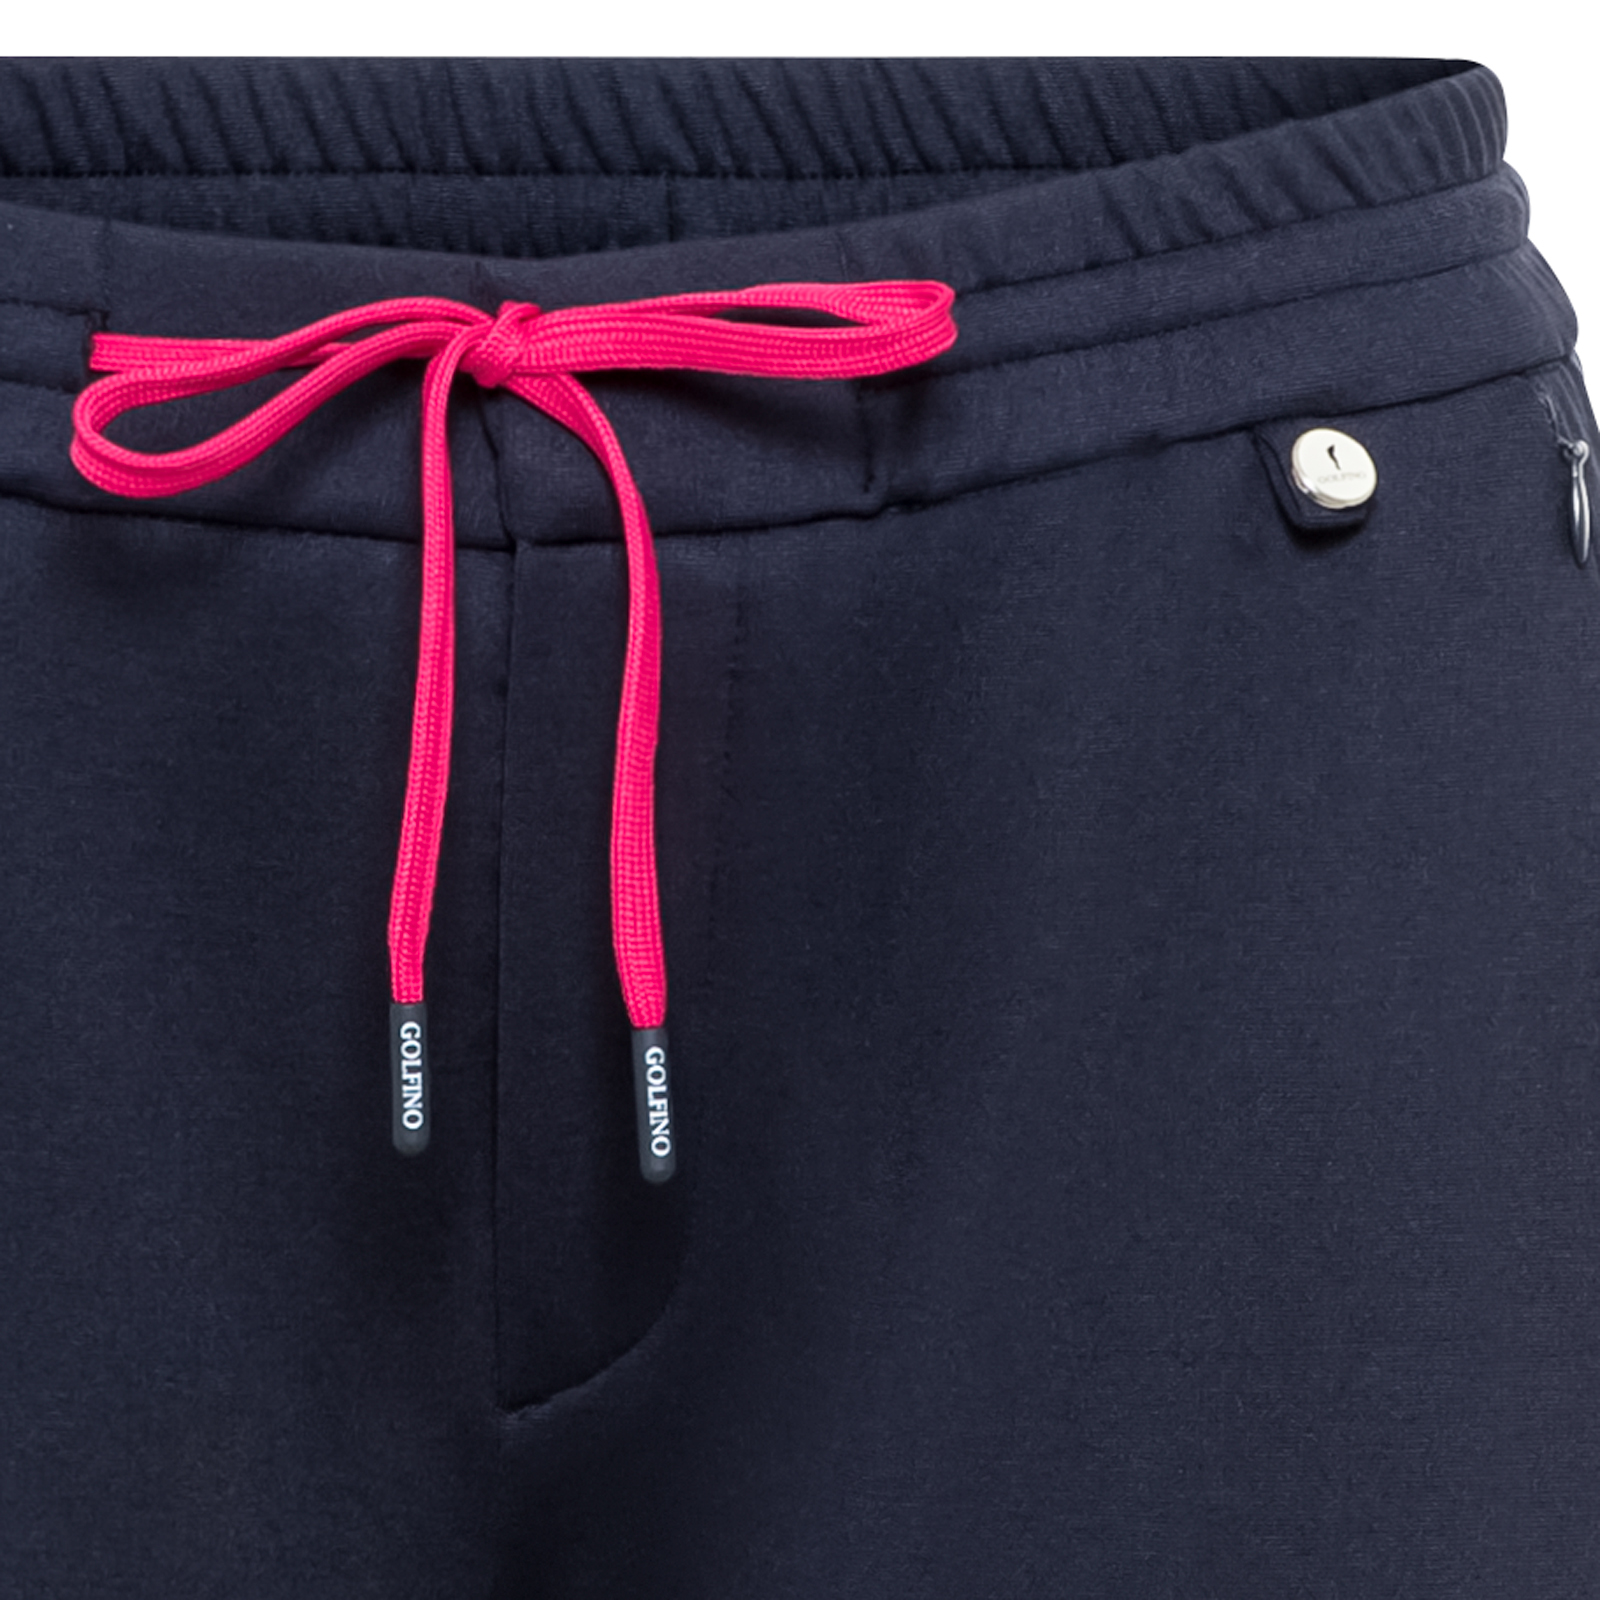 Pantalon 7/8 séduisant particulièrement élastique pour femmes